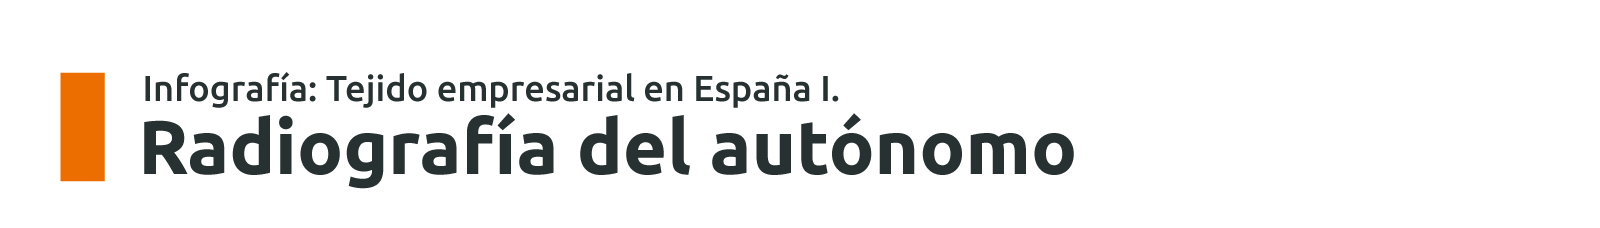 Tejido empresarial en España: Autónomos